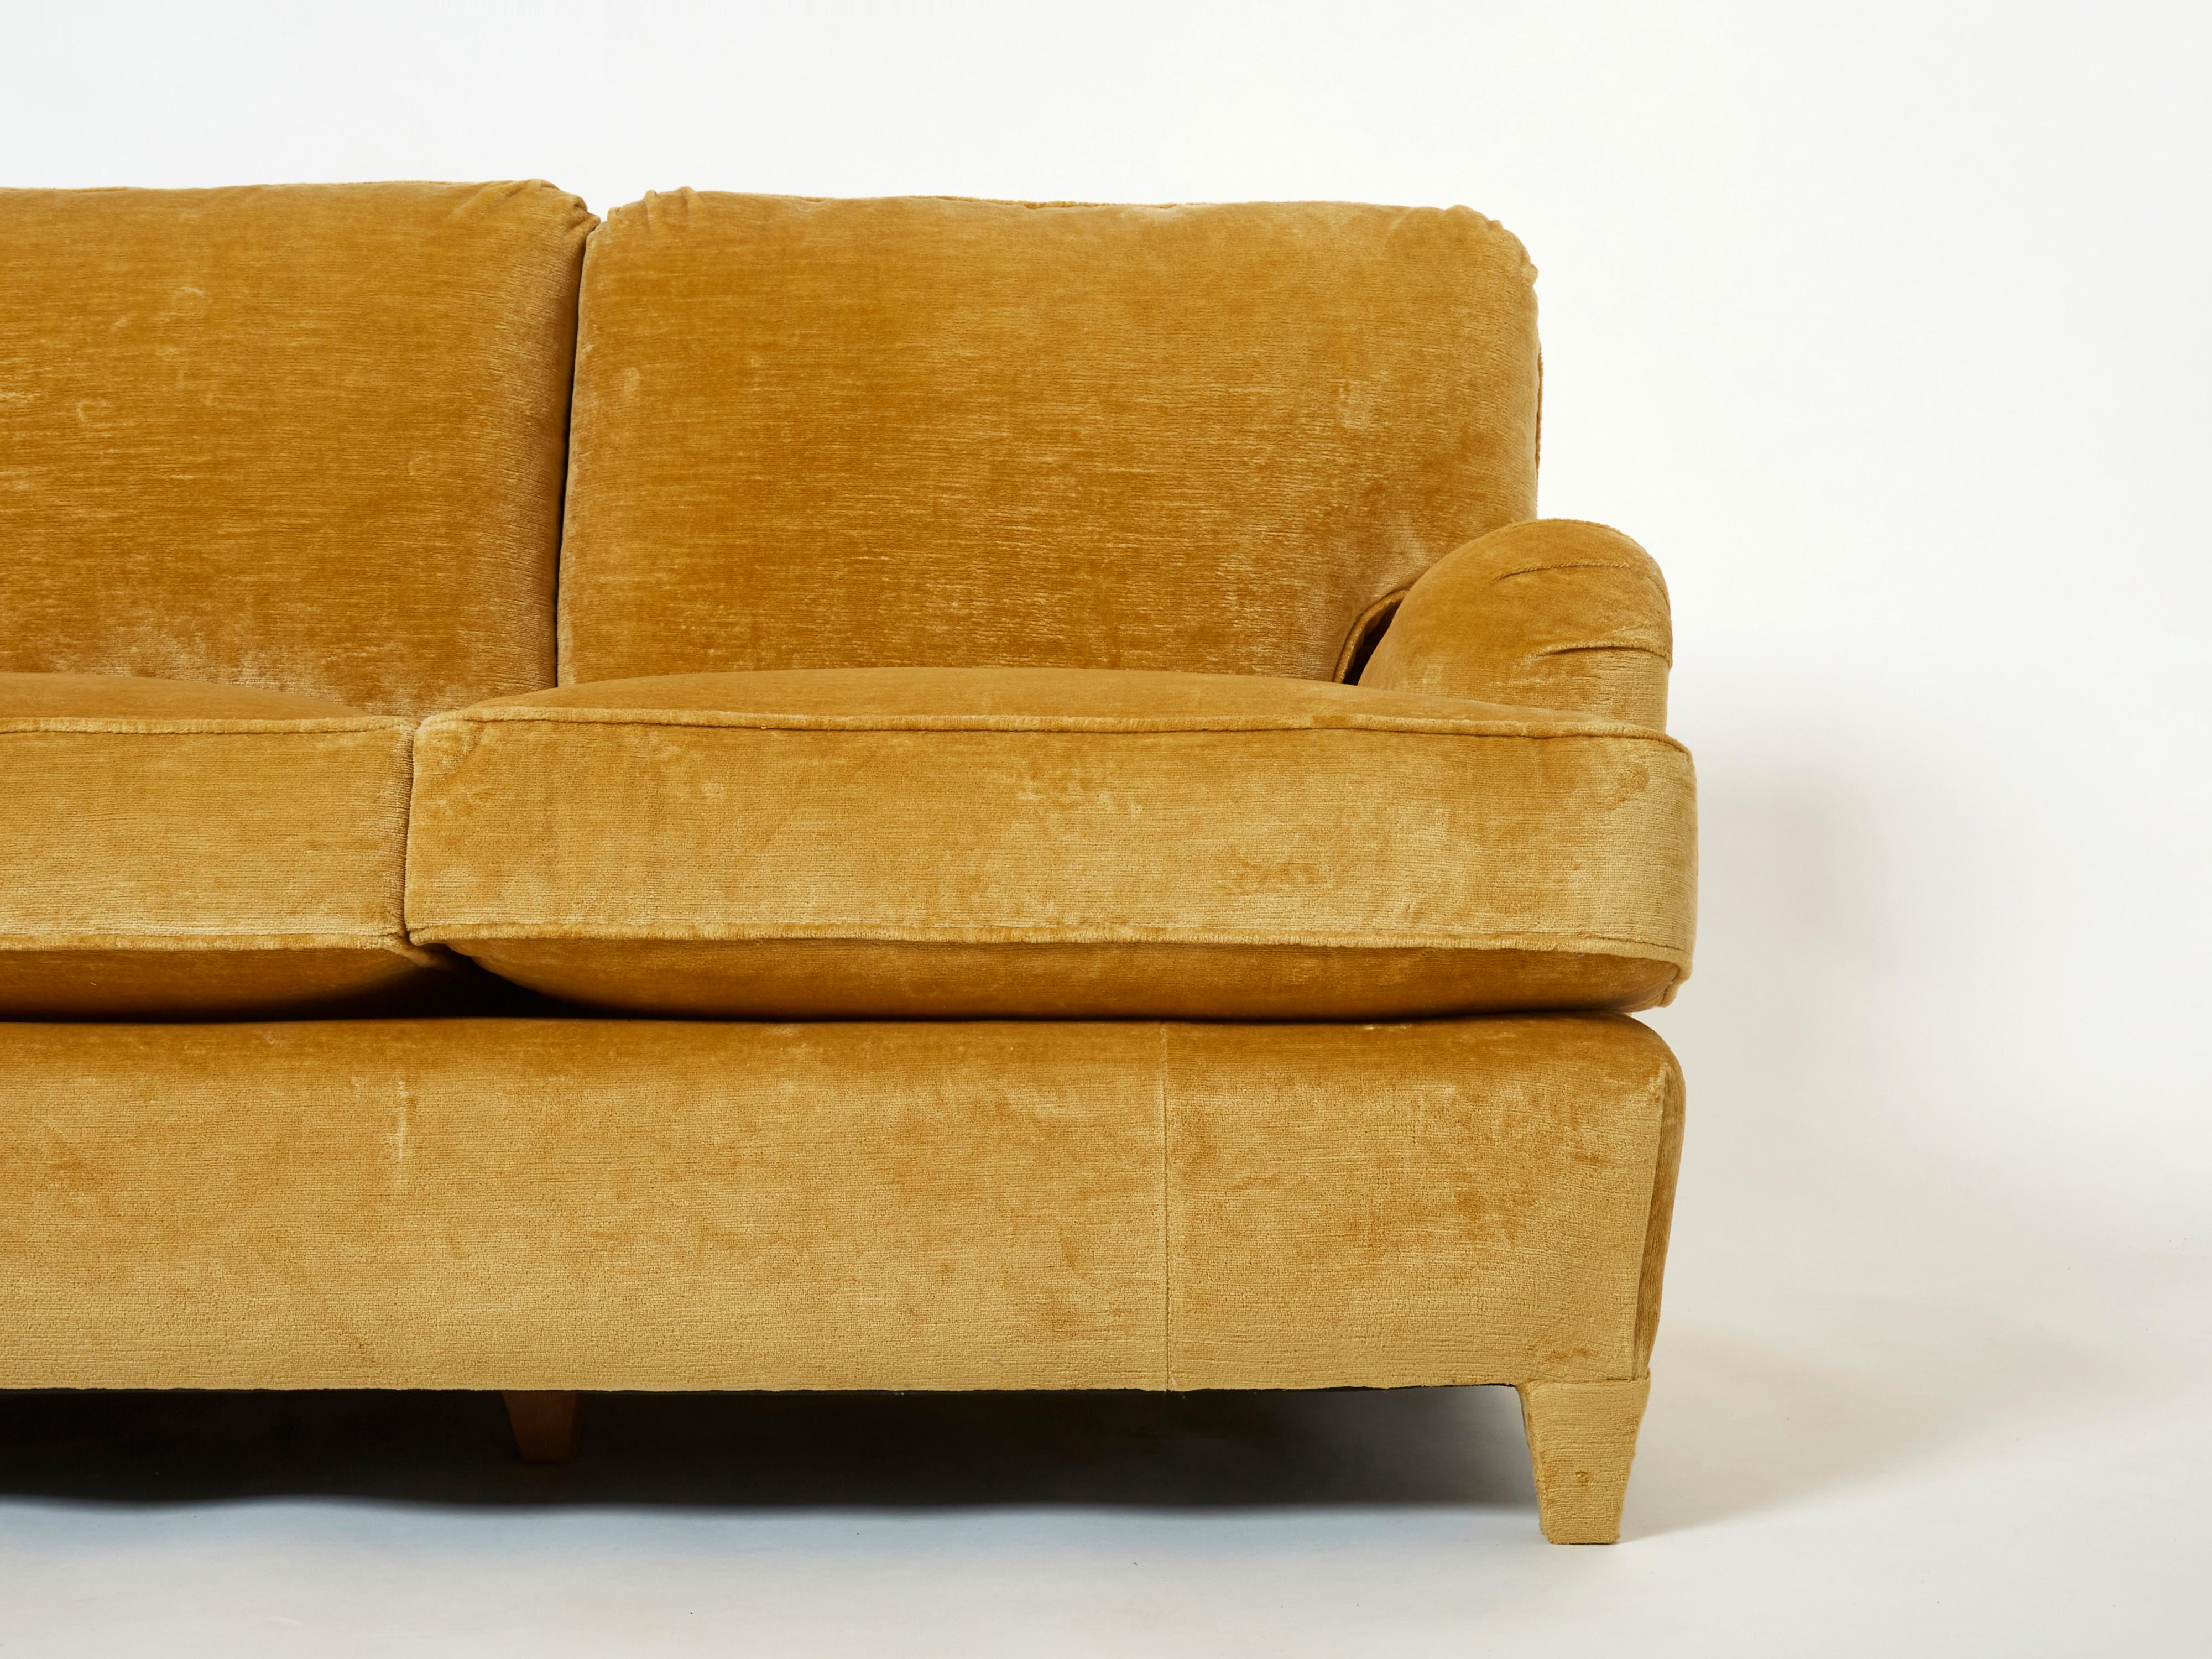 Art Deco Jean-Michel Frank art deco sofa new velvet upholstery 1935 